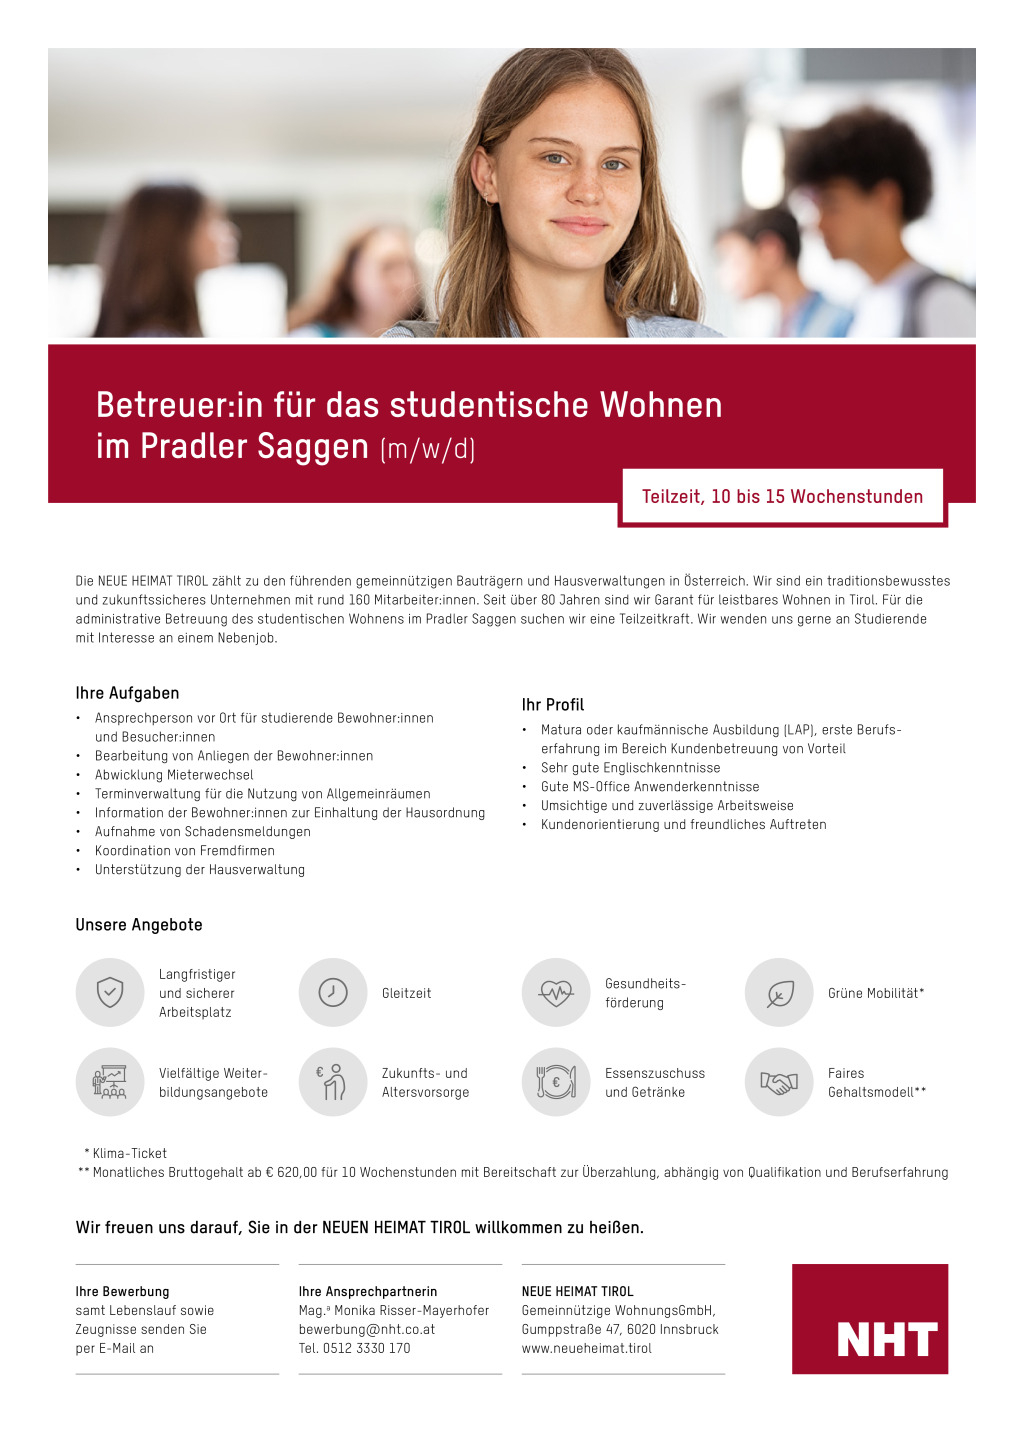 NHT23-Stelleninserat_Betreuer-in-Studentisches-Wohnen_mwd.pdf